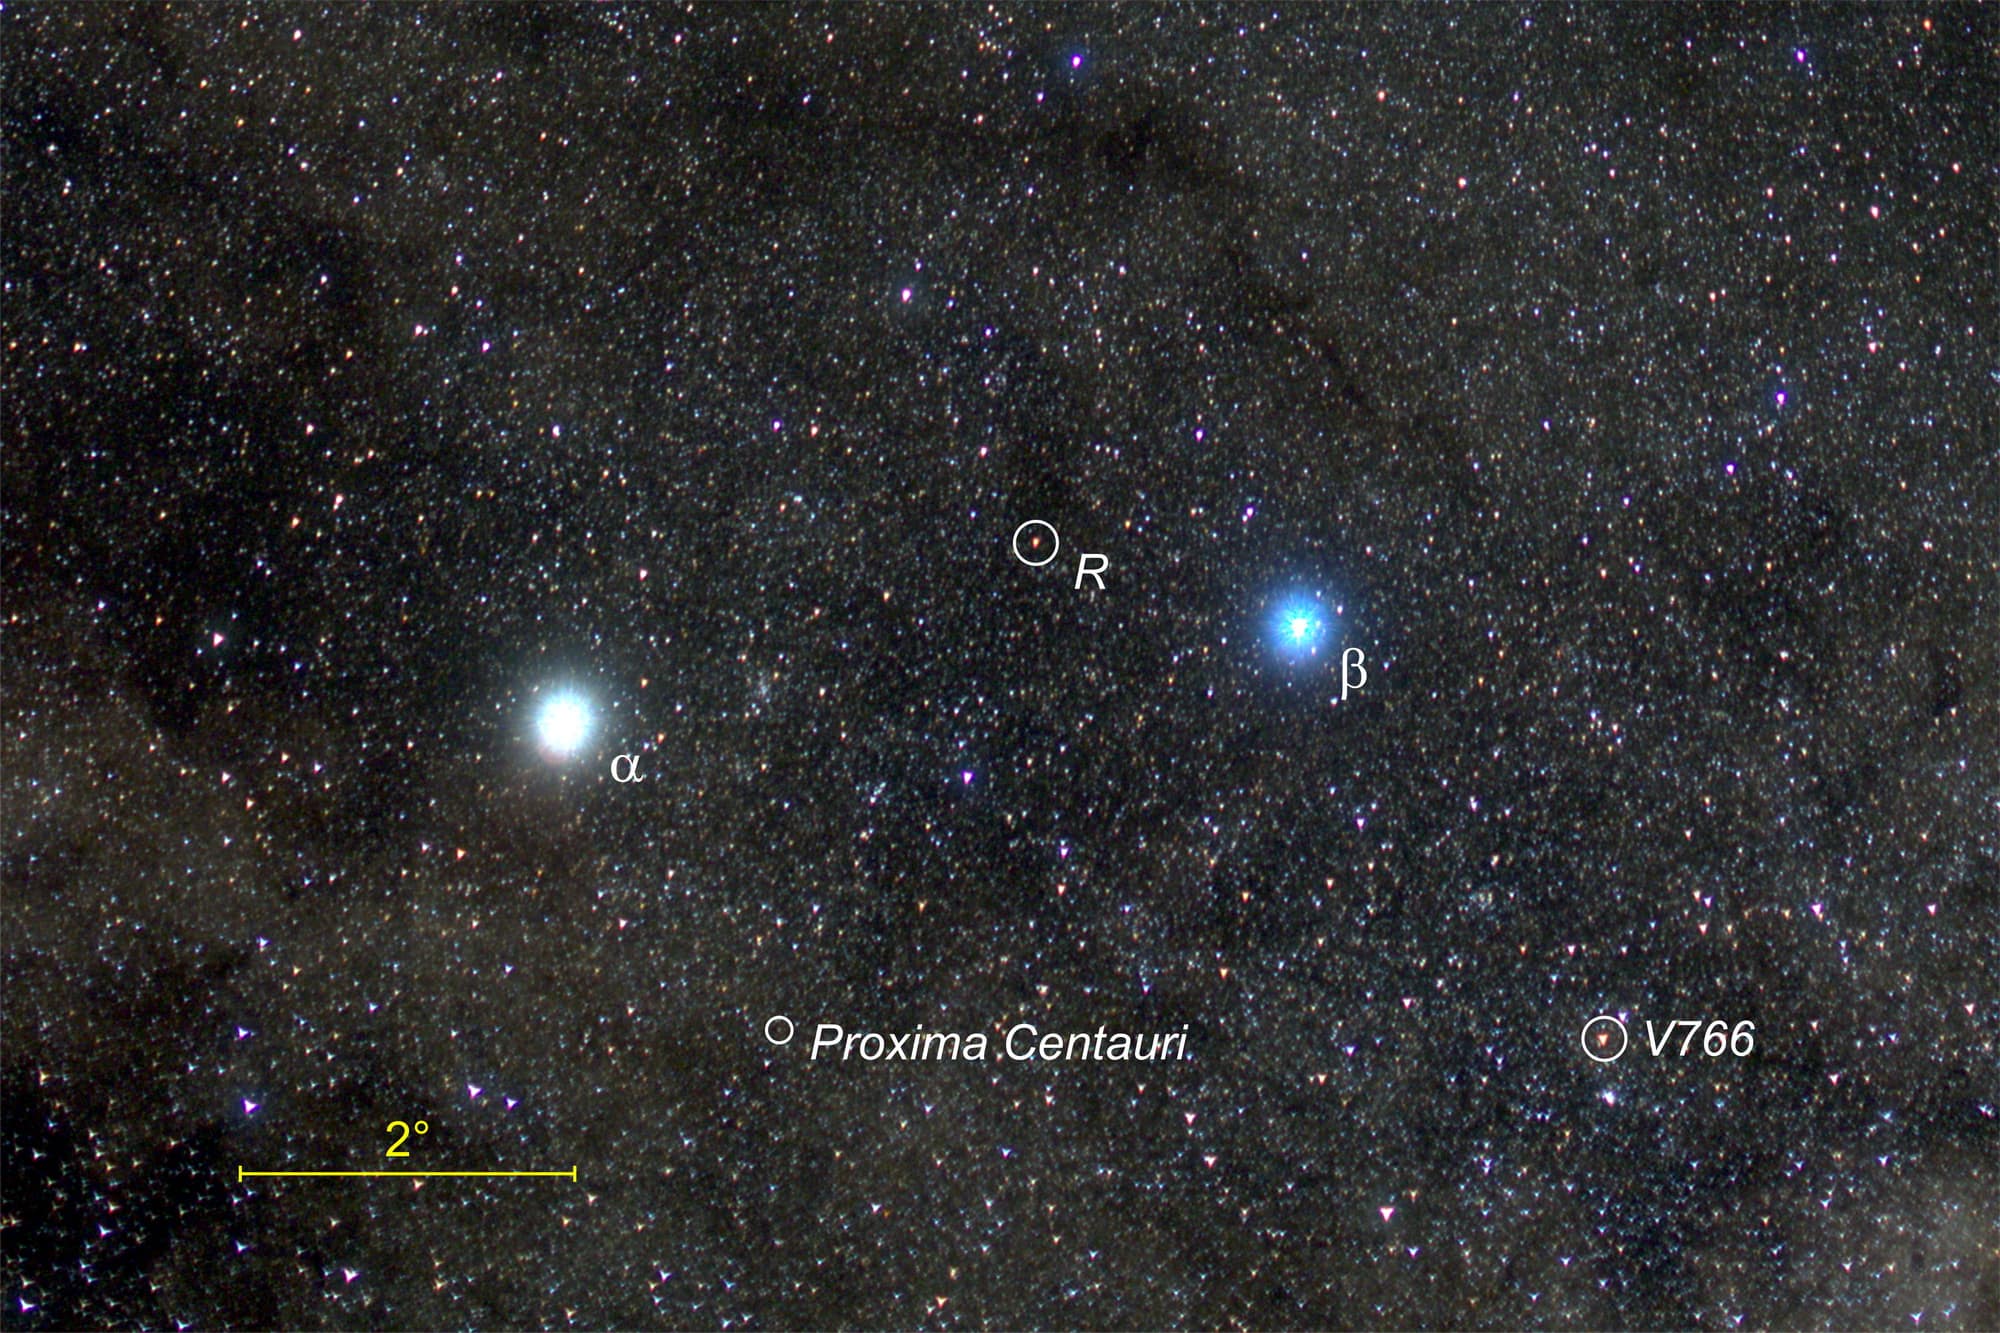 Weiß und blau leuchten die hellen Sterne Alpha und Beta Centauri, während der markierte Stern R zwischen ihnen rötlich glimmt.